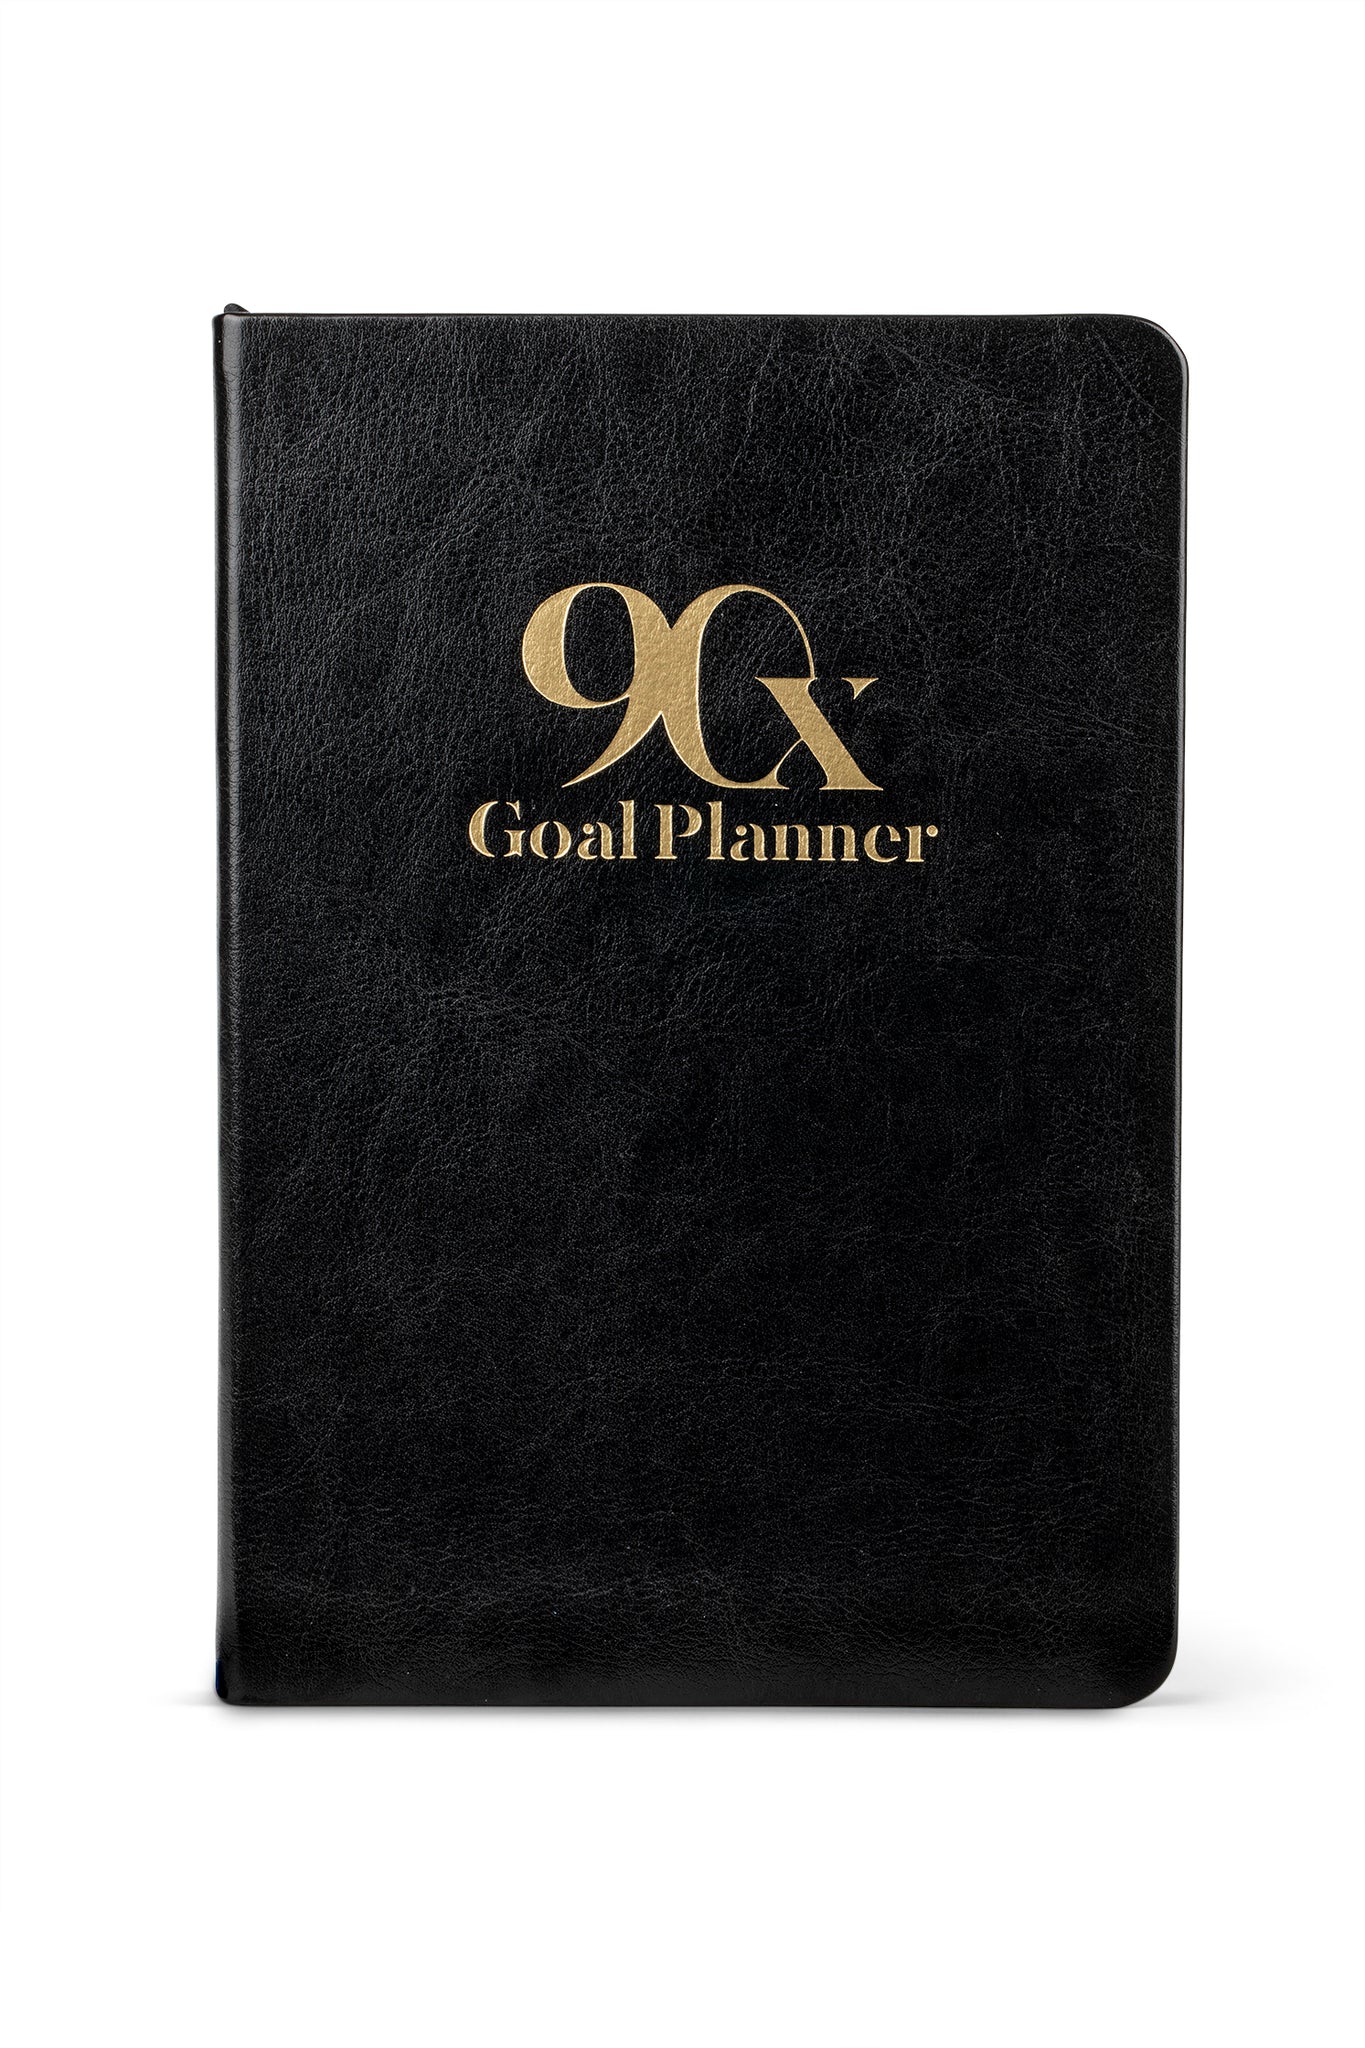 Wholesale & Bulk Order for Goal Planners